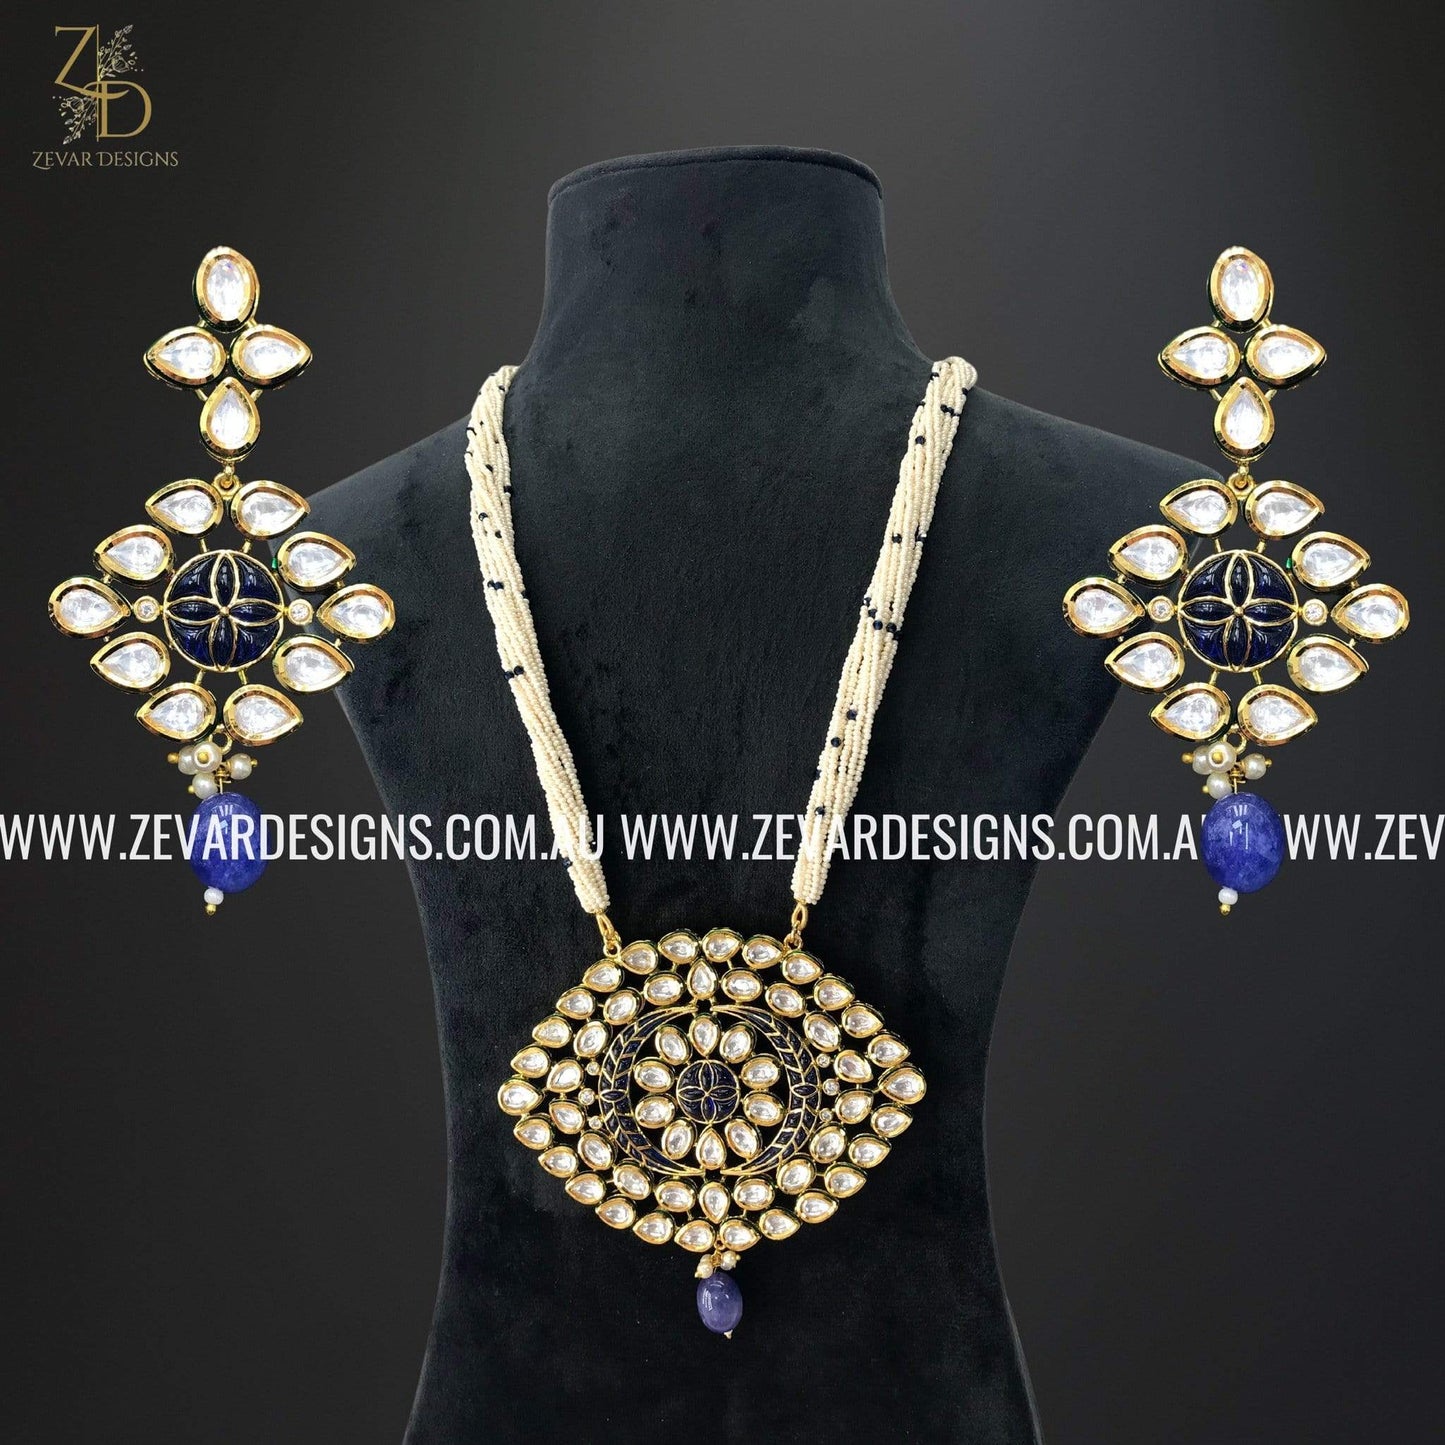 Zevar Designs Necklace Sets Kundan Long set - Pearl White and Blue